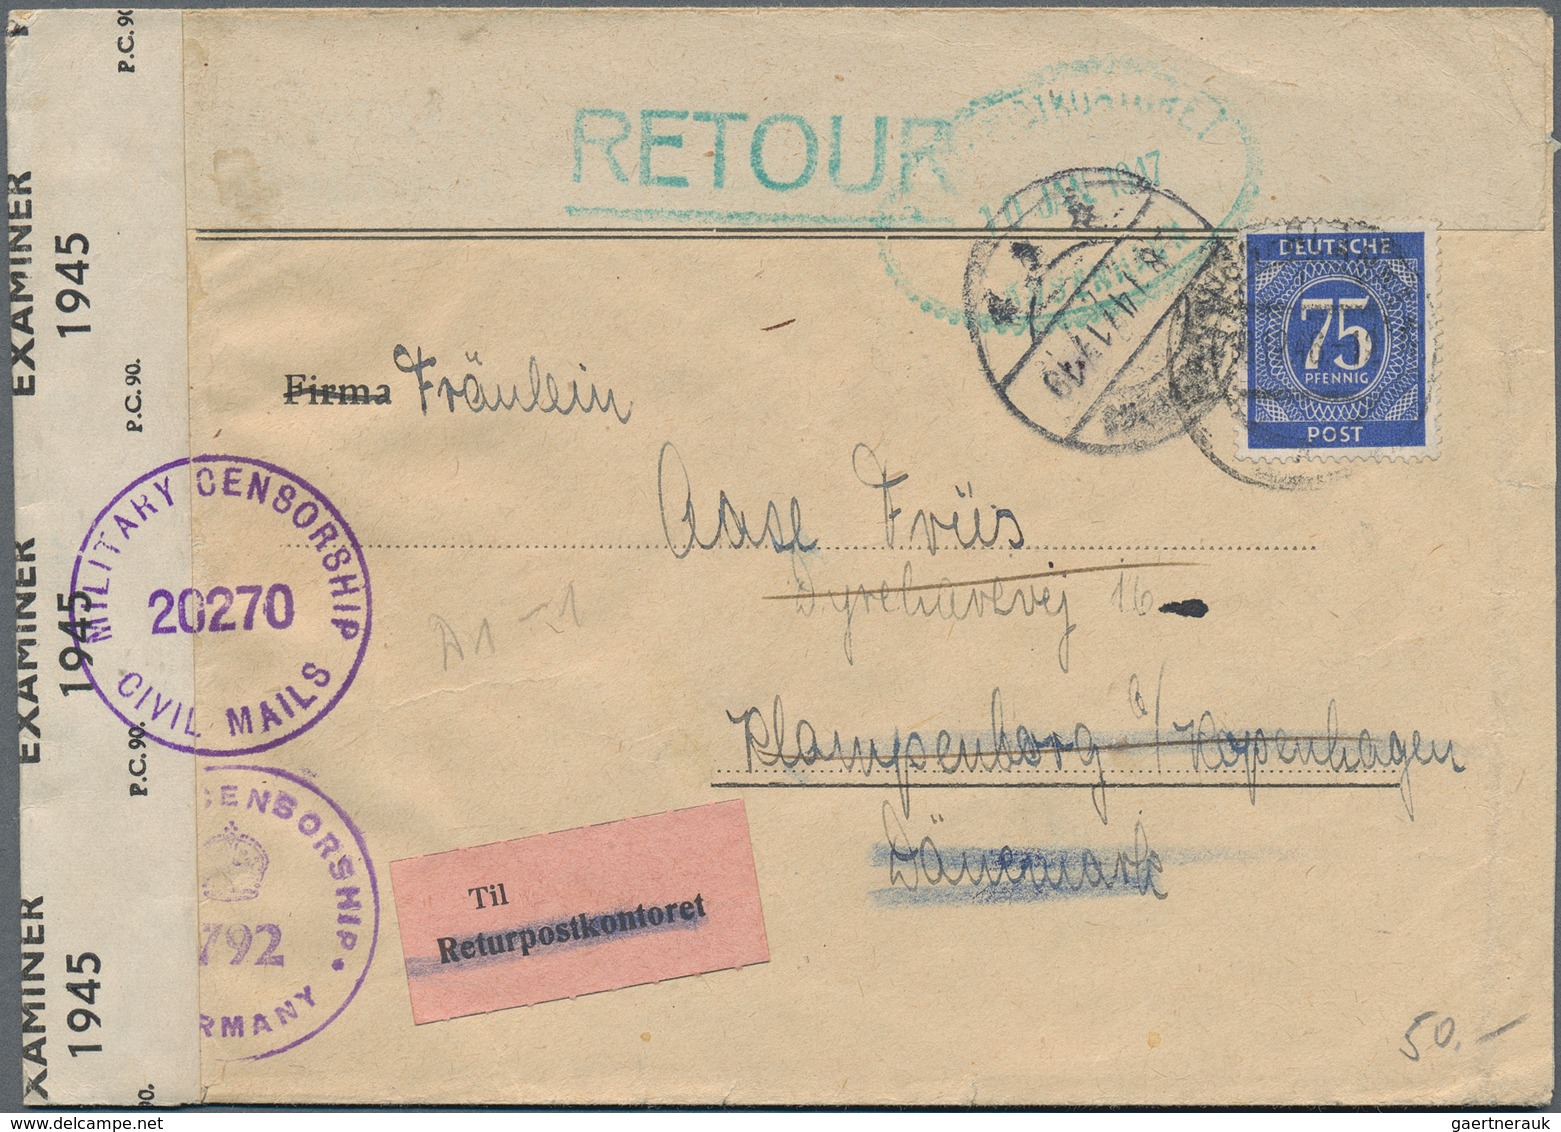 Alliierte Besetzung - Gemeinschaftsausgaben: 1947-1948, Partie mit über 500 Briefen und Belegen, dab